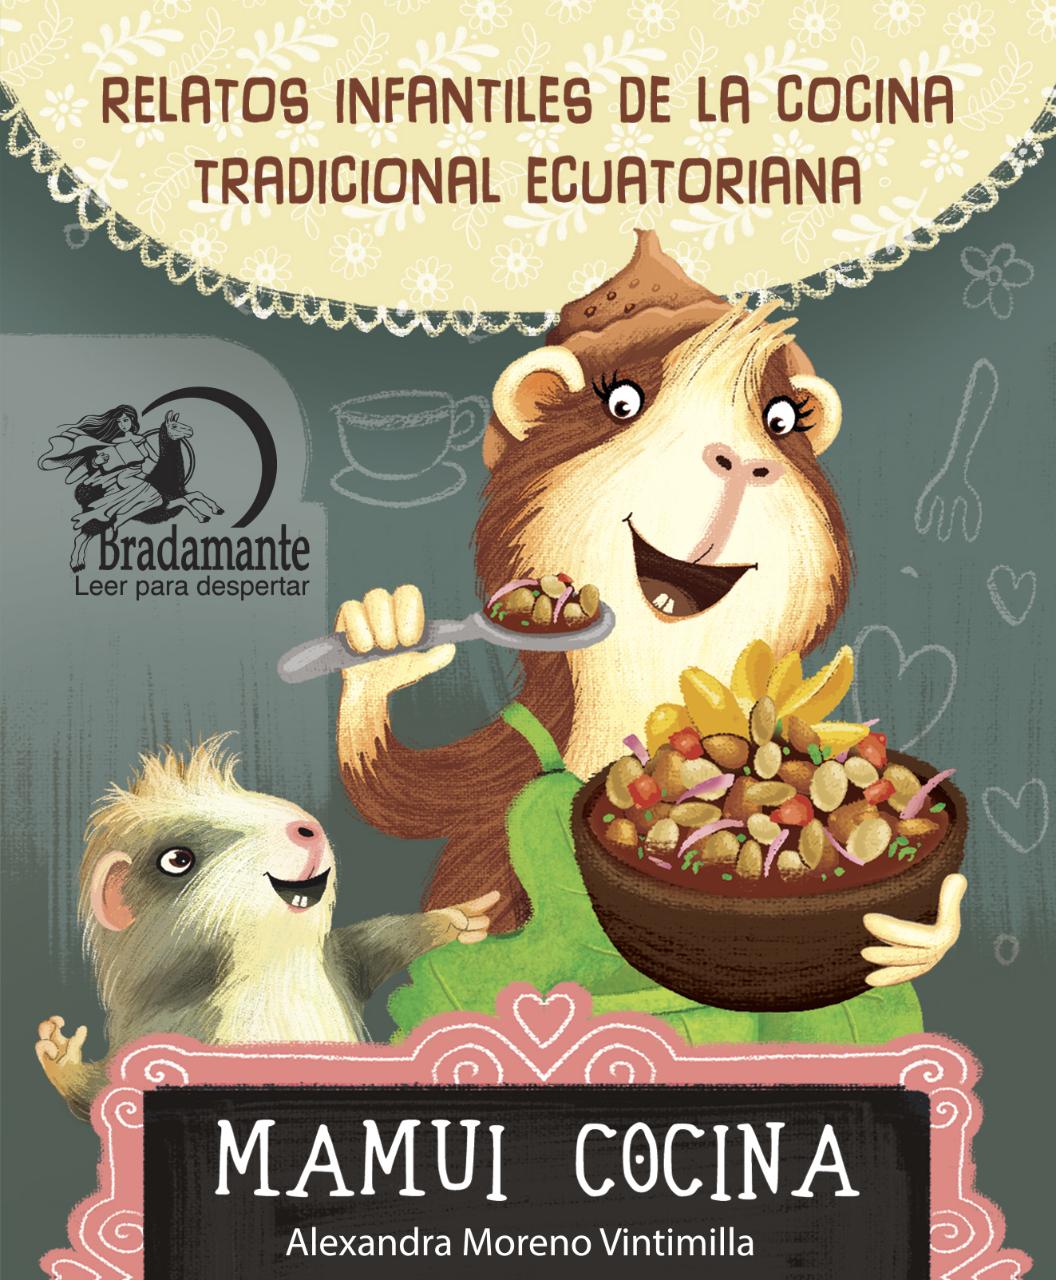  libros infantiles sobre la Cocina Tradicional Ecuatoriana serán  repartidos en todo el país – Instituto Nacional de Patrimonio Cultural